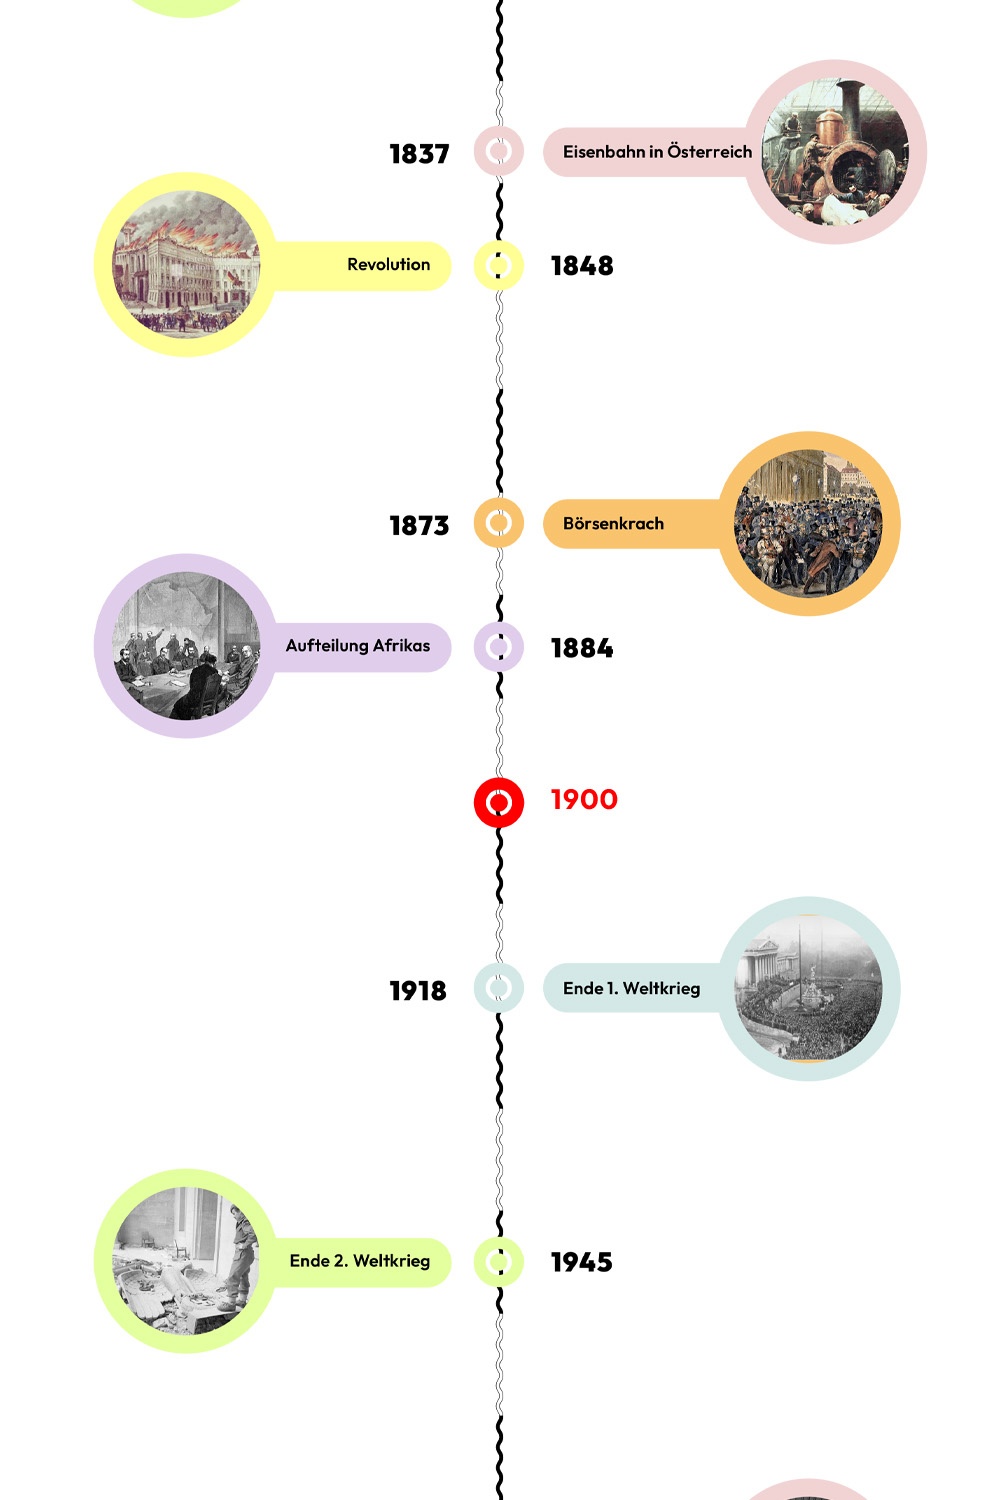 Zeitstrahl mit historischen Ereignissen - 1900 ist hervorgehoben. © wasbishergeschah.at